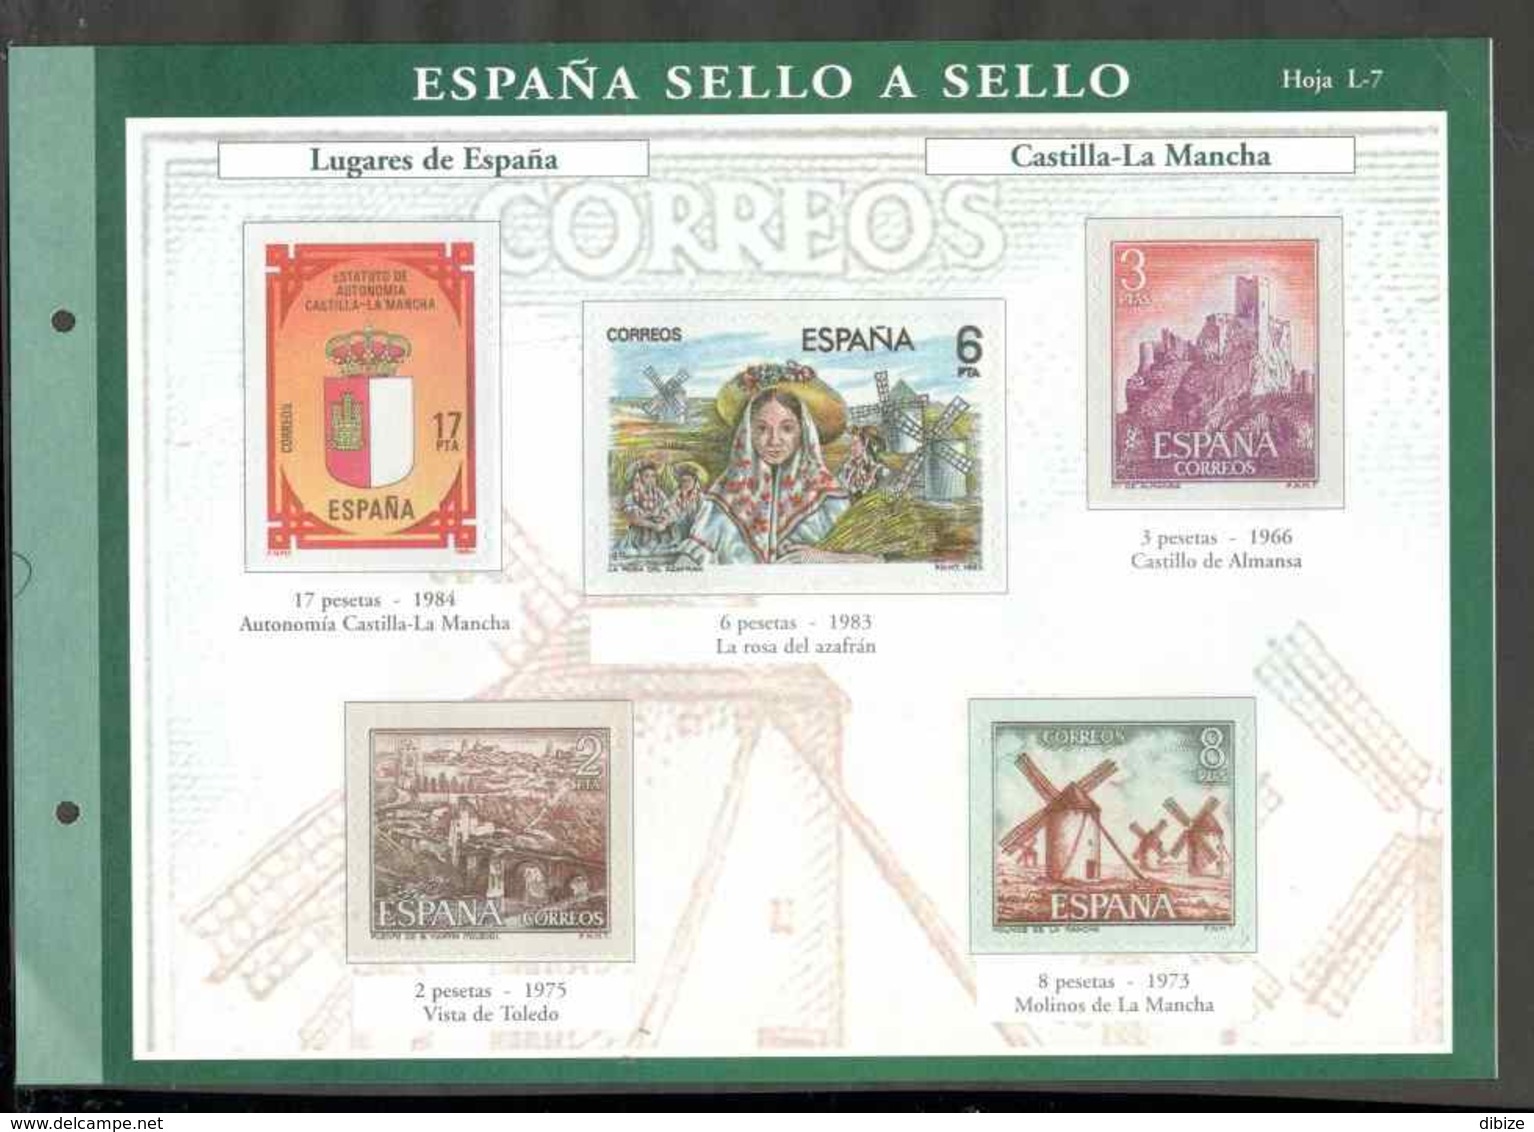 España sello a sello. Colección limitada  numerada. 18 entregas El País. N° 3 a 6. 8 a 14. 33 a 35. 48 a 51. Reproducion